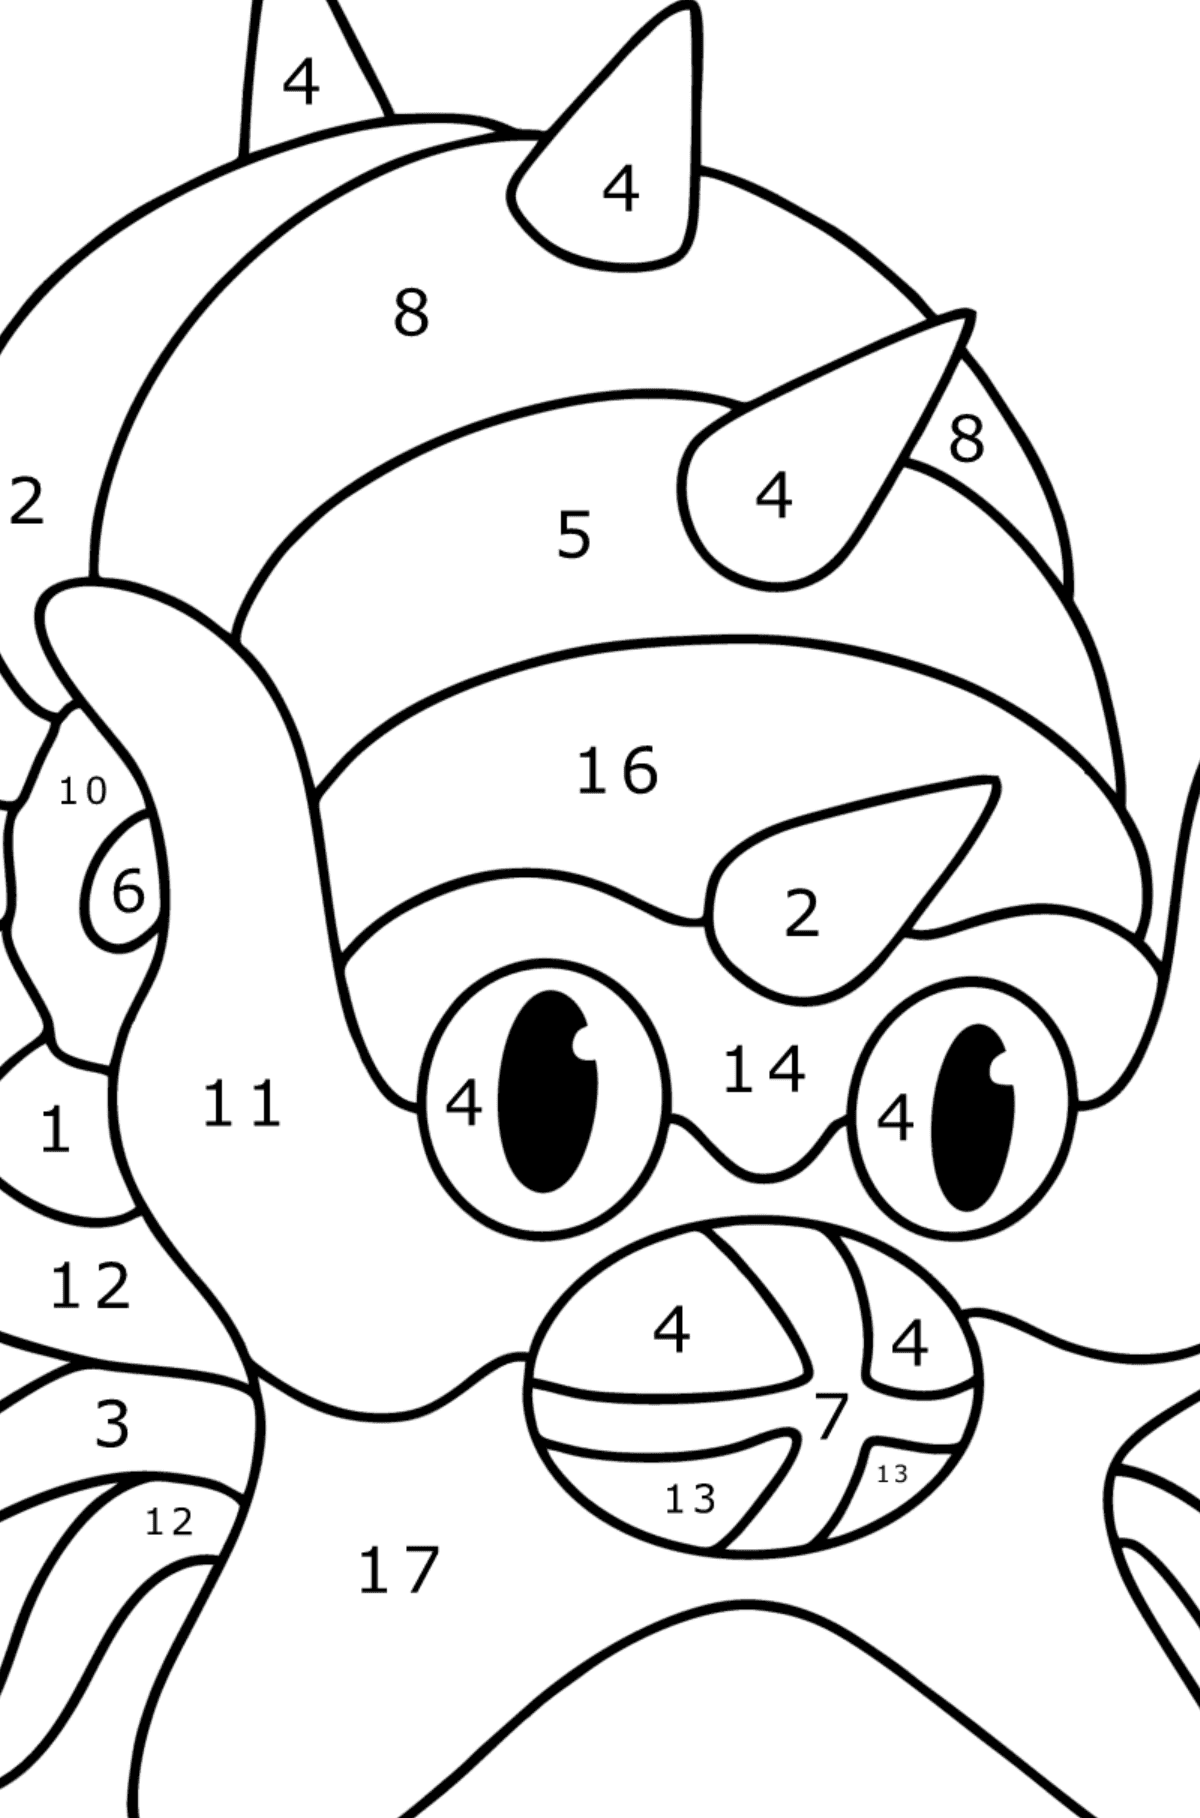 Boyama sayfası Pokémon XY Omastar - Sayılarla Boyama çocuklar için